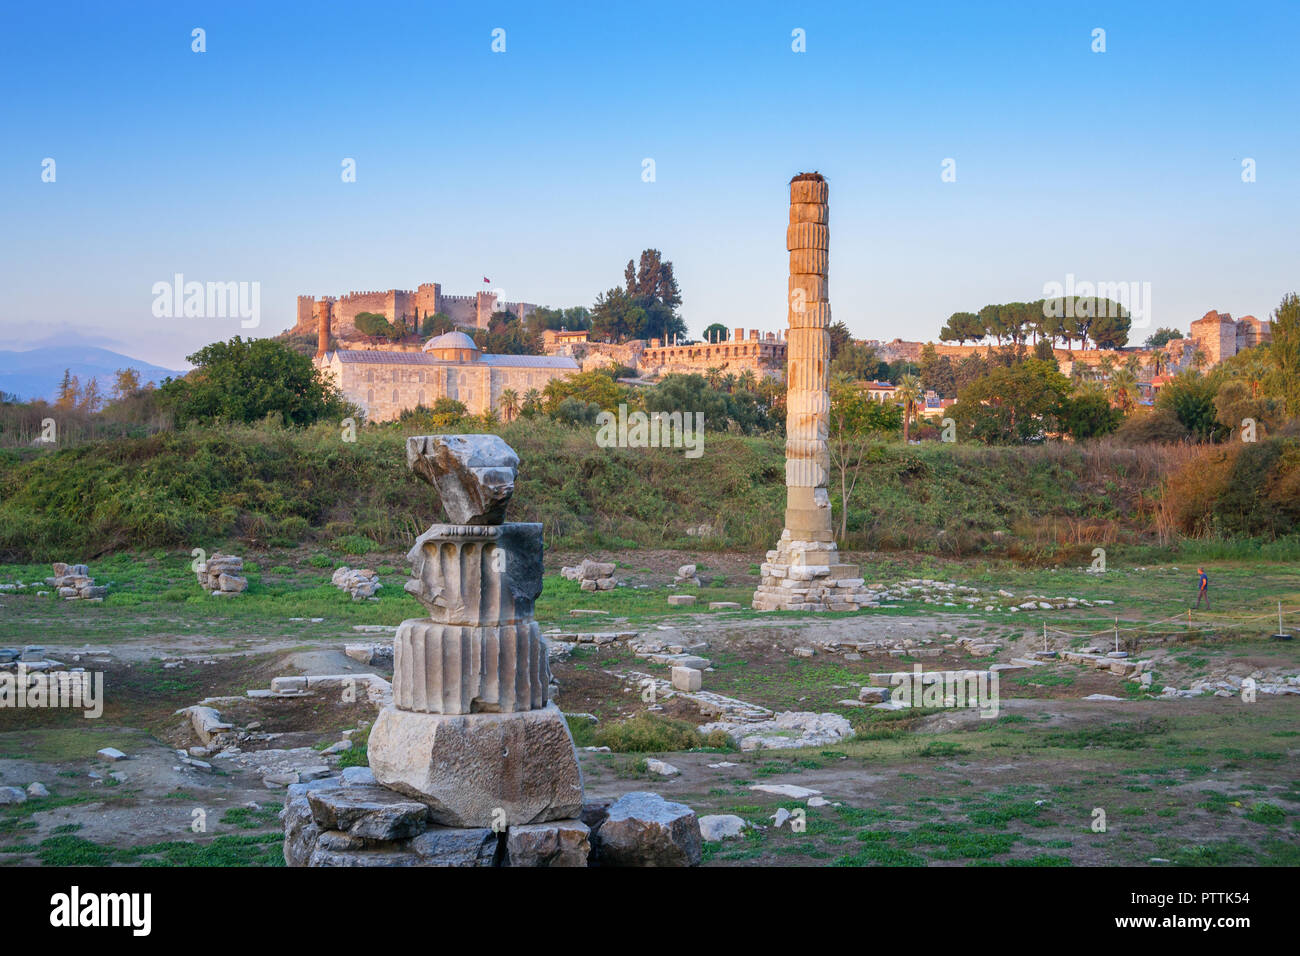 Tempel der Artemis Ruinen - eines der Sieben Weltwunder der Antike - Selcuk, Türkei. Stockfoto